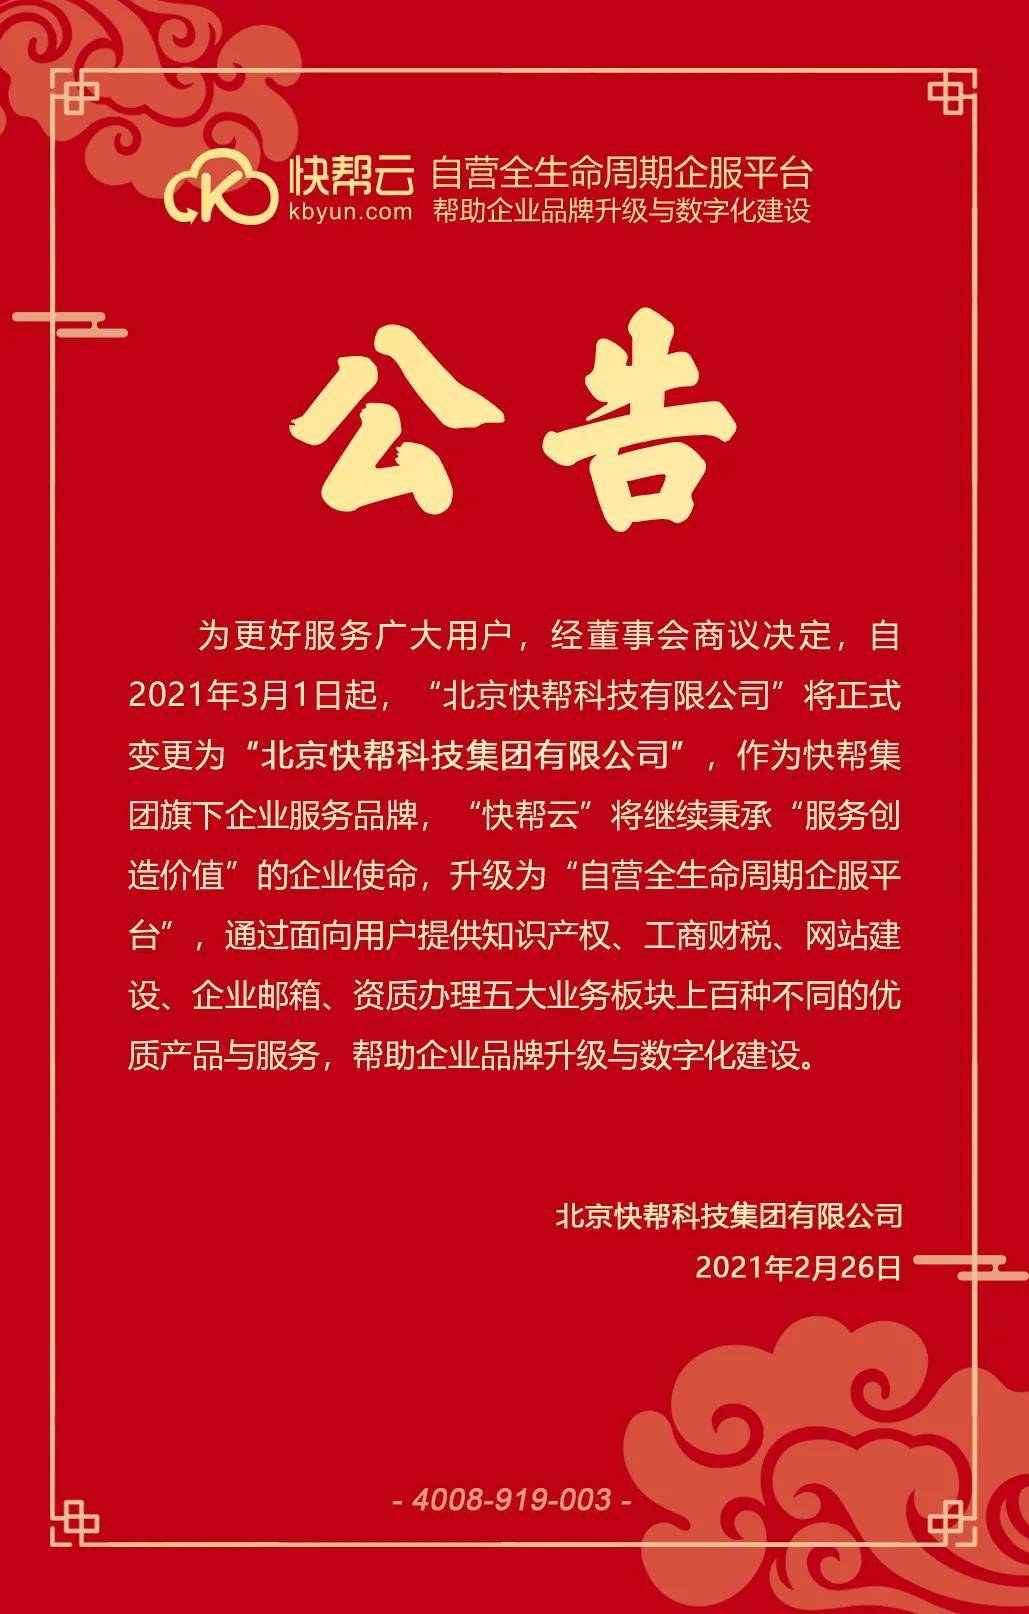 公告"北京快帮科技有限公司"将正式变更为"北京快帮科技集团有限公司